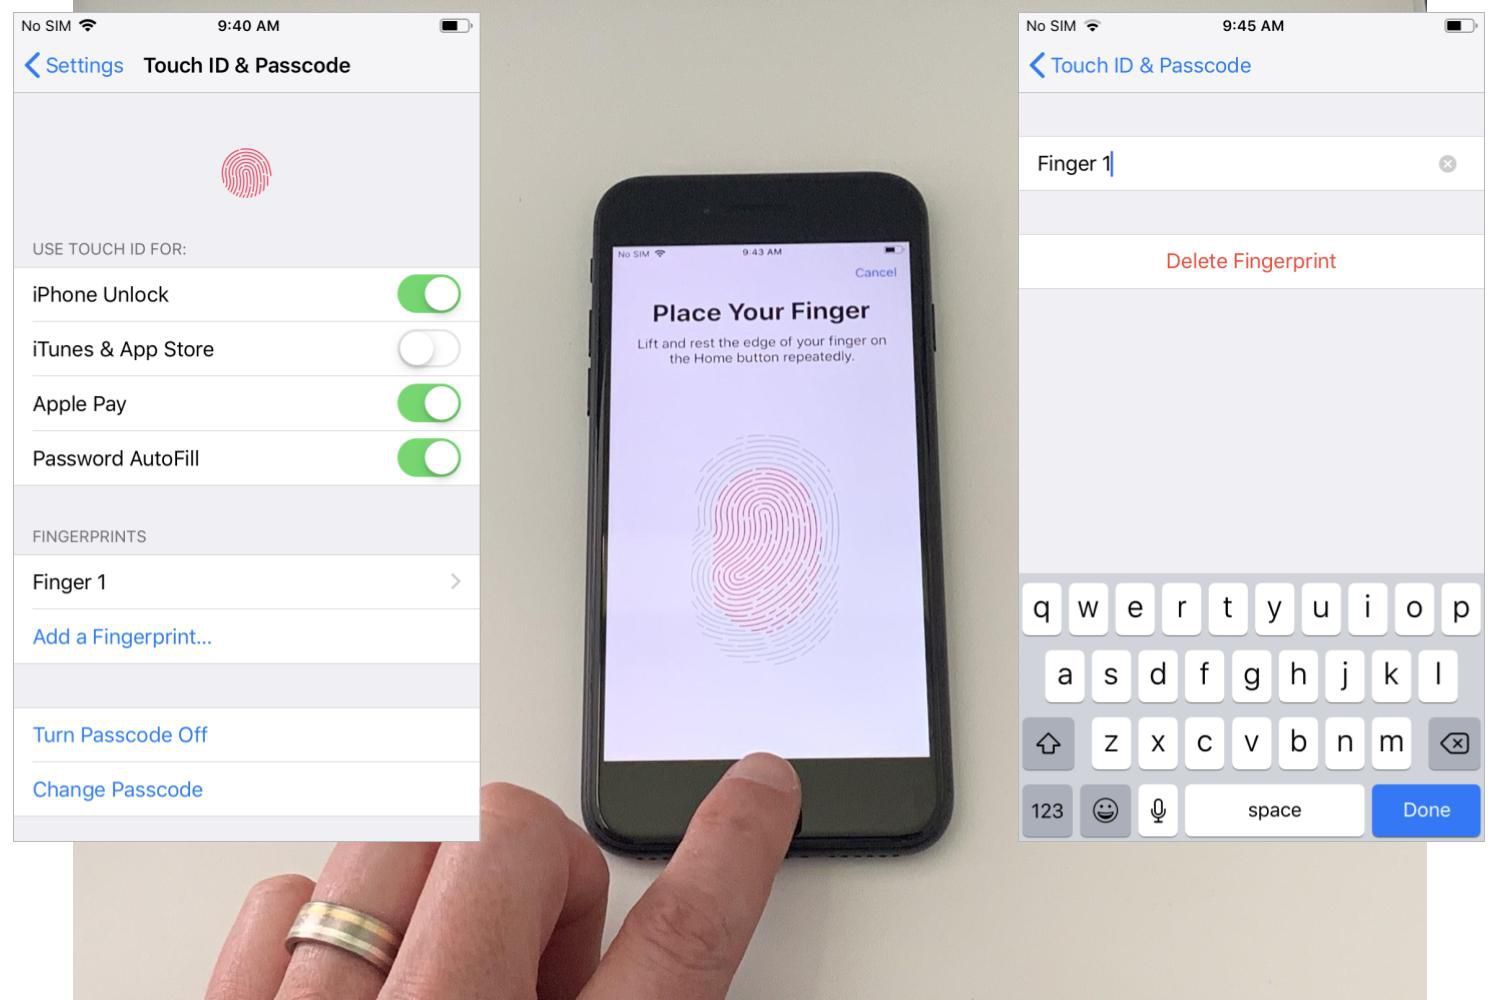 Два снимка экрана телефона iOS (слева, параметры конфигурации Touch ID описаны в посте; справа, изменить имя отпечатка пальца или удалить); Отцентрируйте фотографию левого указательного пальца во время сеанса настройки Touch ID, показывая образец отпечатка пальца на экране